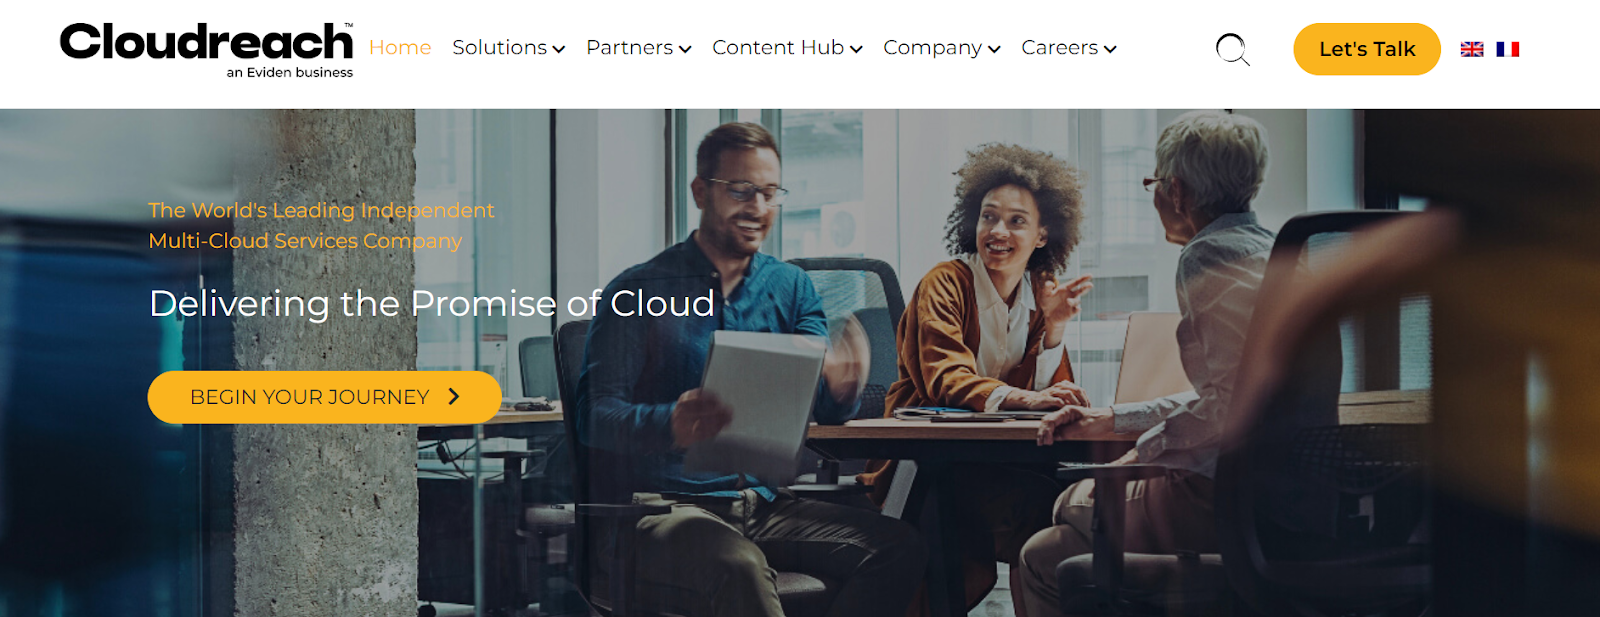 Cloudreach homepage. 